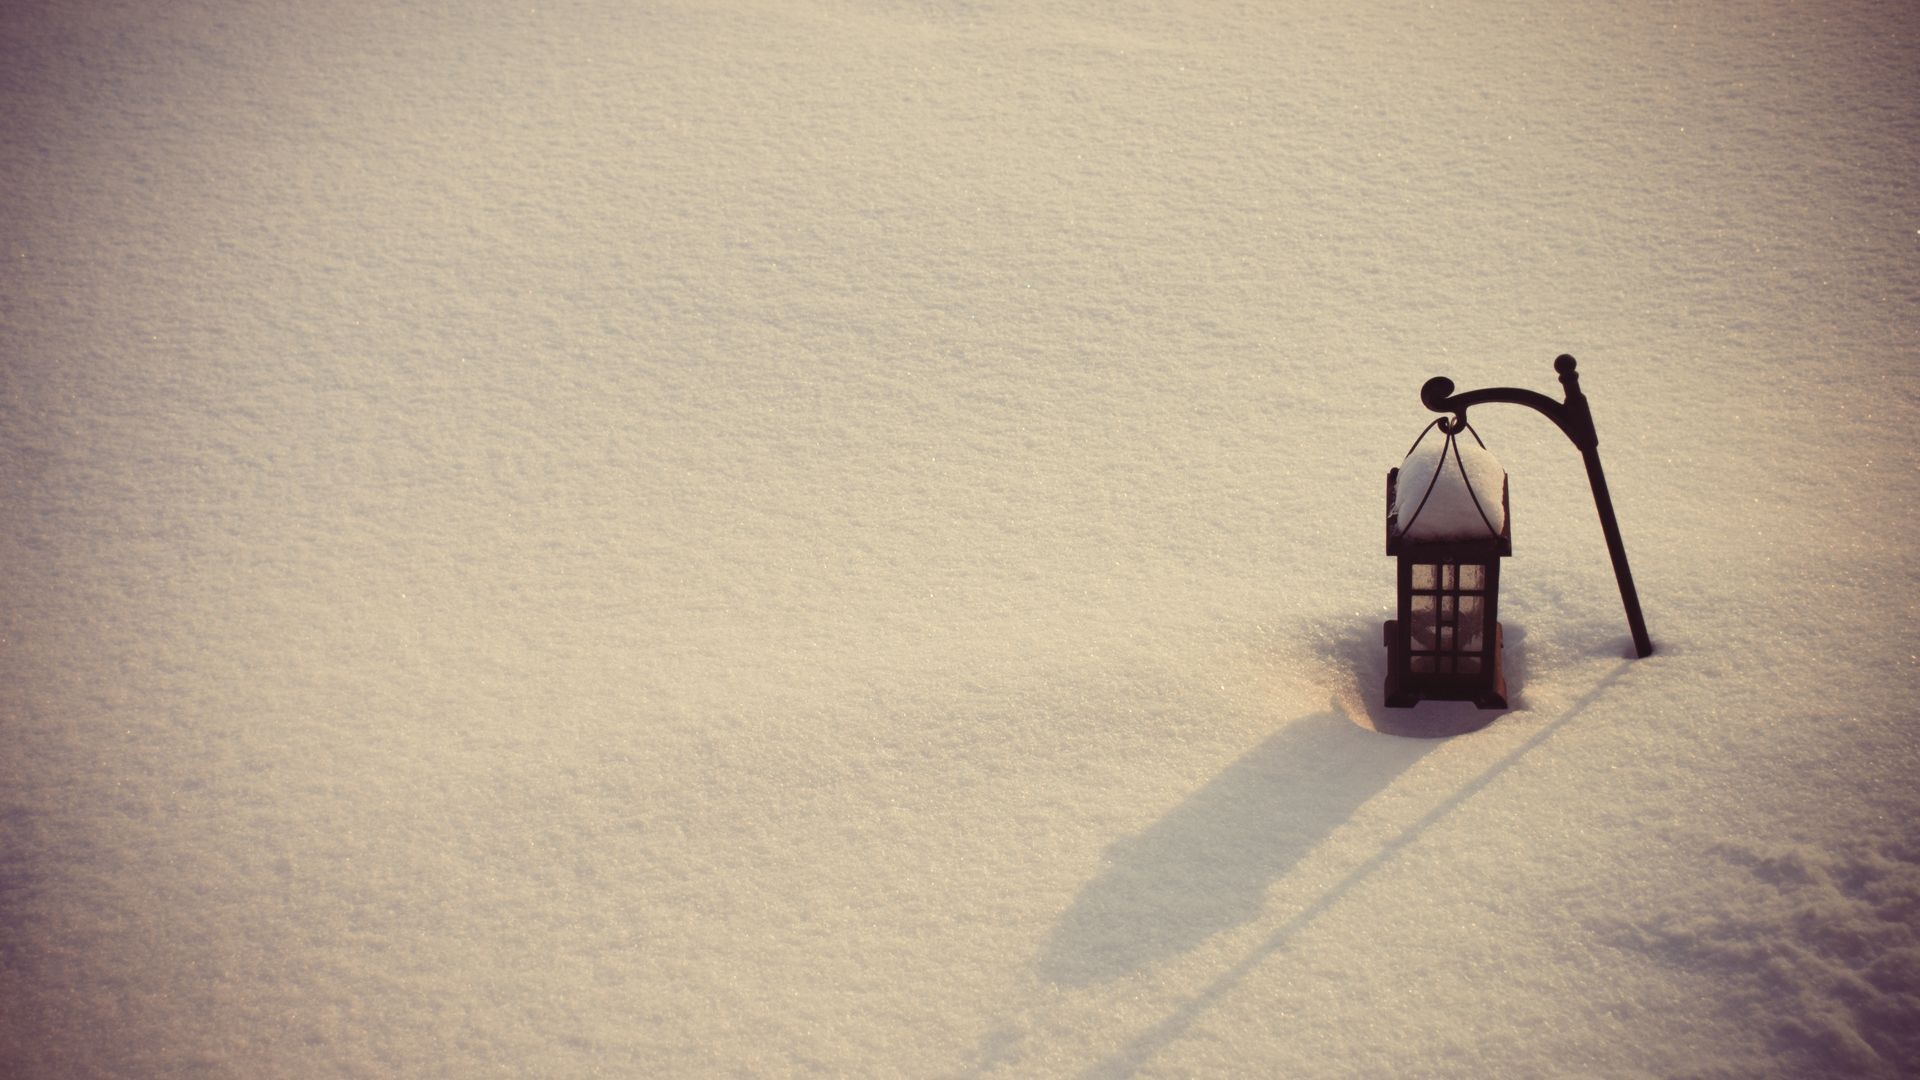 Скачать обои бесплатно Зима, Снег, Фонарный Столб, Сделано Человеком картинка на рабочий стол ПК